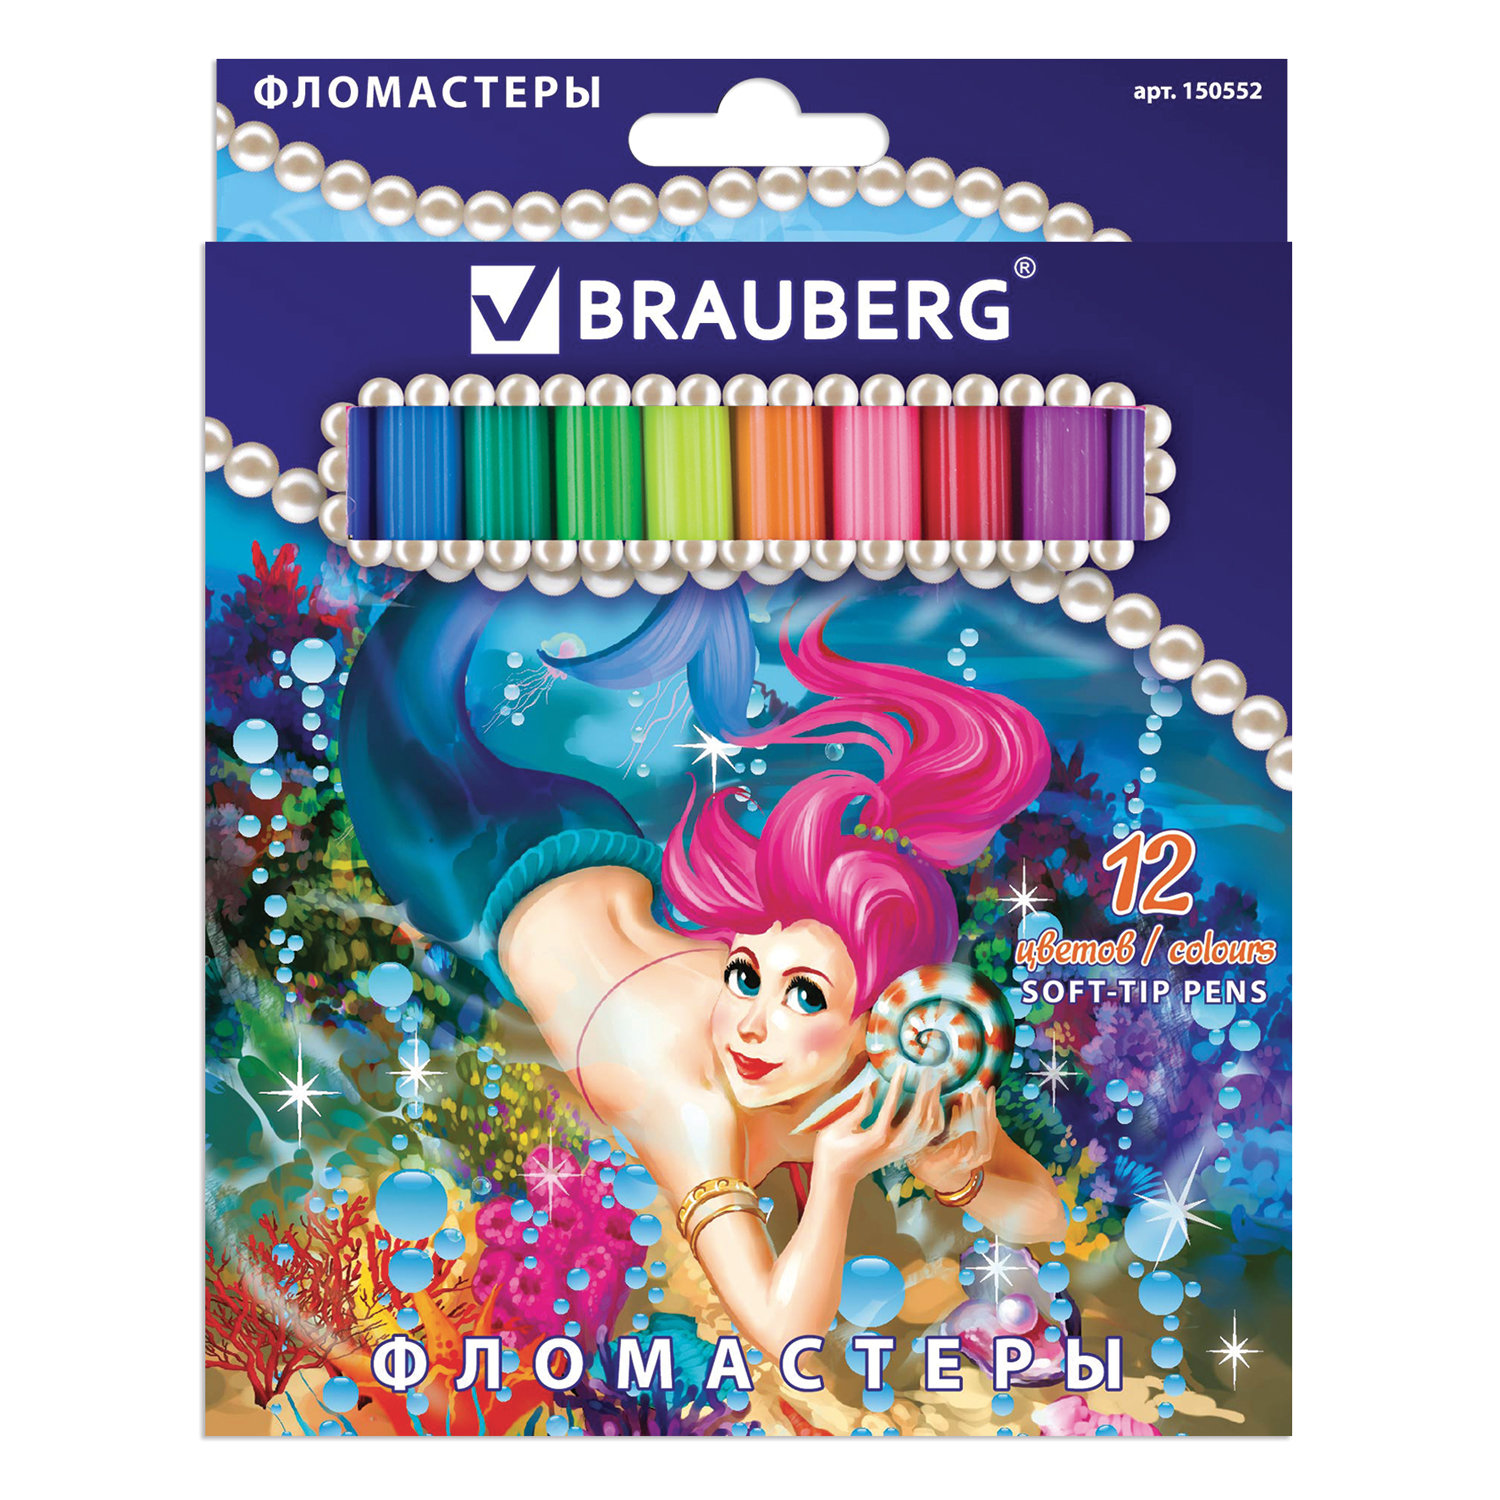 Фломастеры BRAUBERG Морские легенды, 12 цветов, вентилируемый колпачок, картонная упаковка с блестками, 150552 купите по выгодной цене